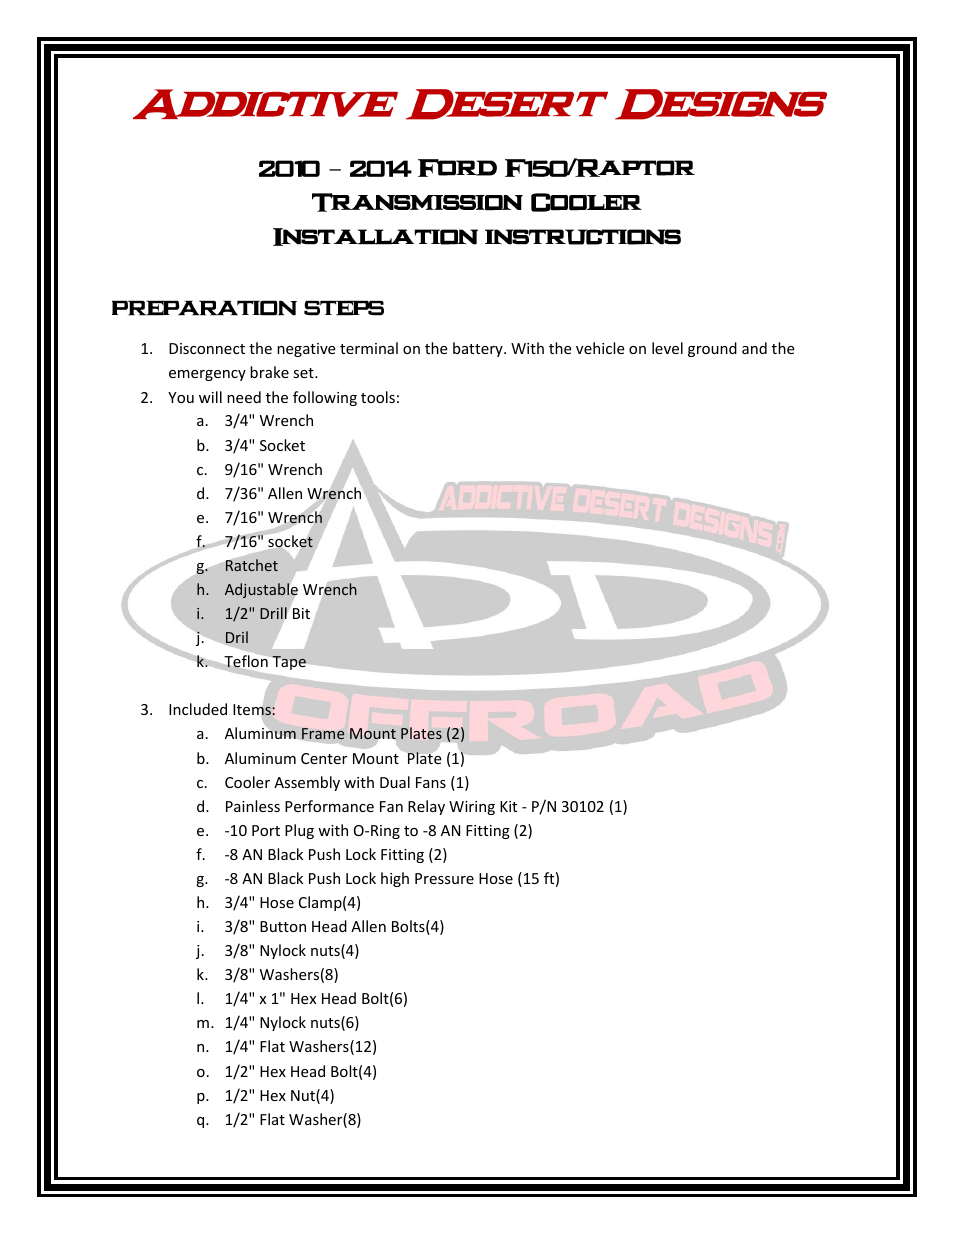 2010 - 2014 Ford F150 / Raptor Transmission Cooler